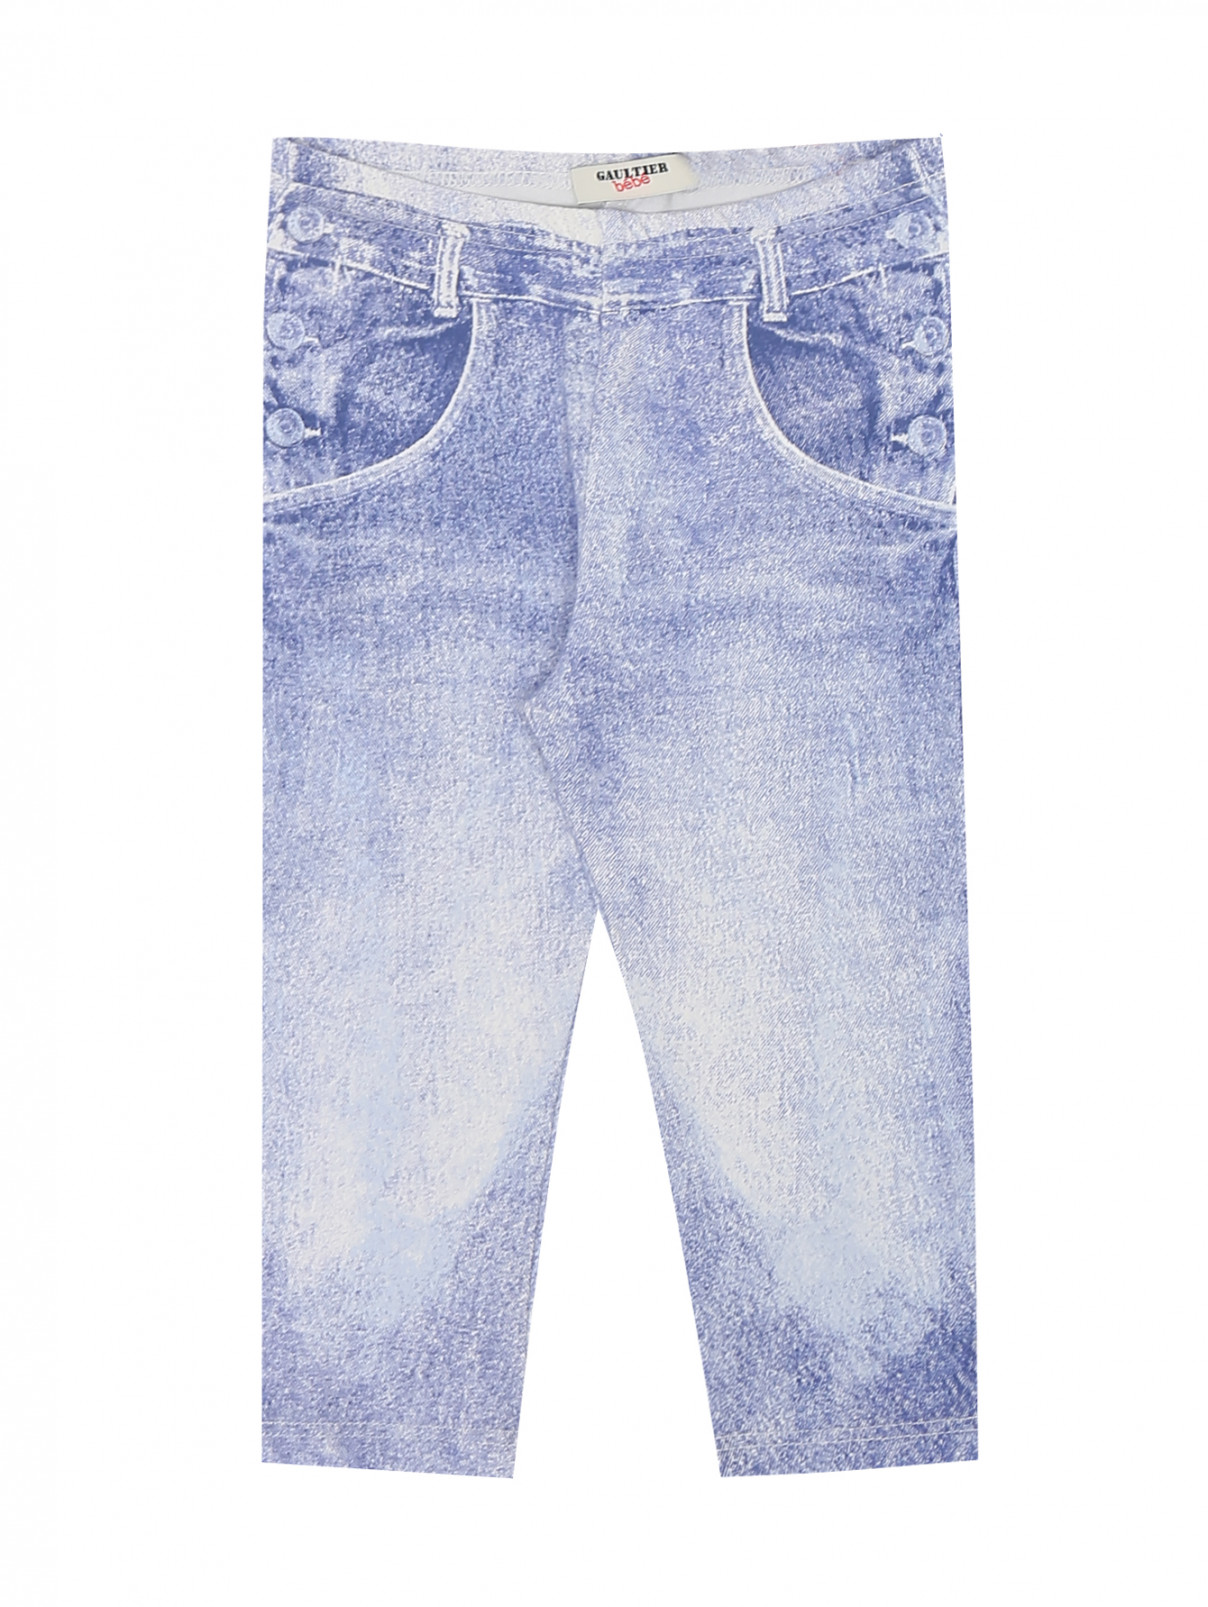 Трикотажные брюки на резинке Junior Gaultier  –  Общий вид  – Цвет:  Синий